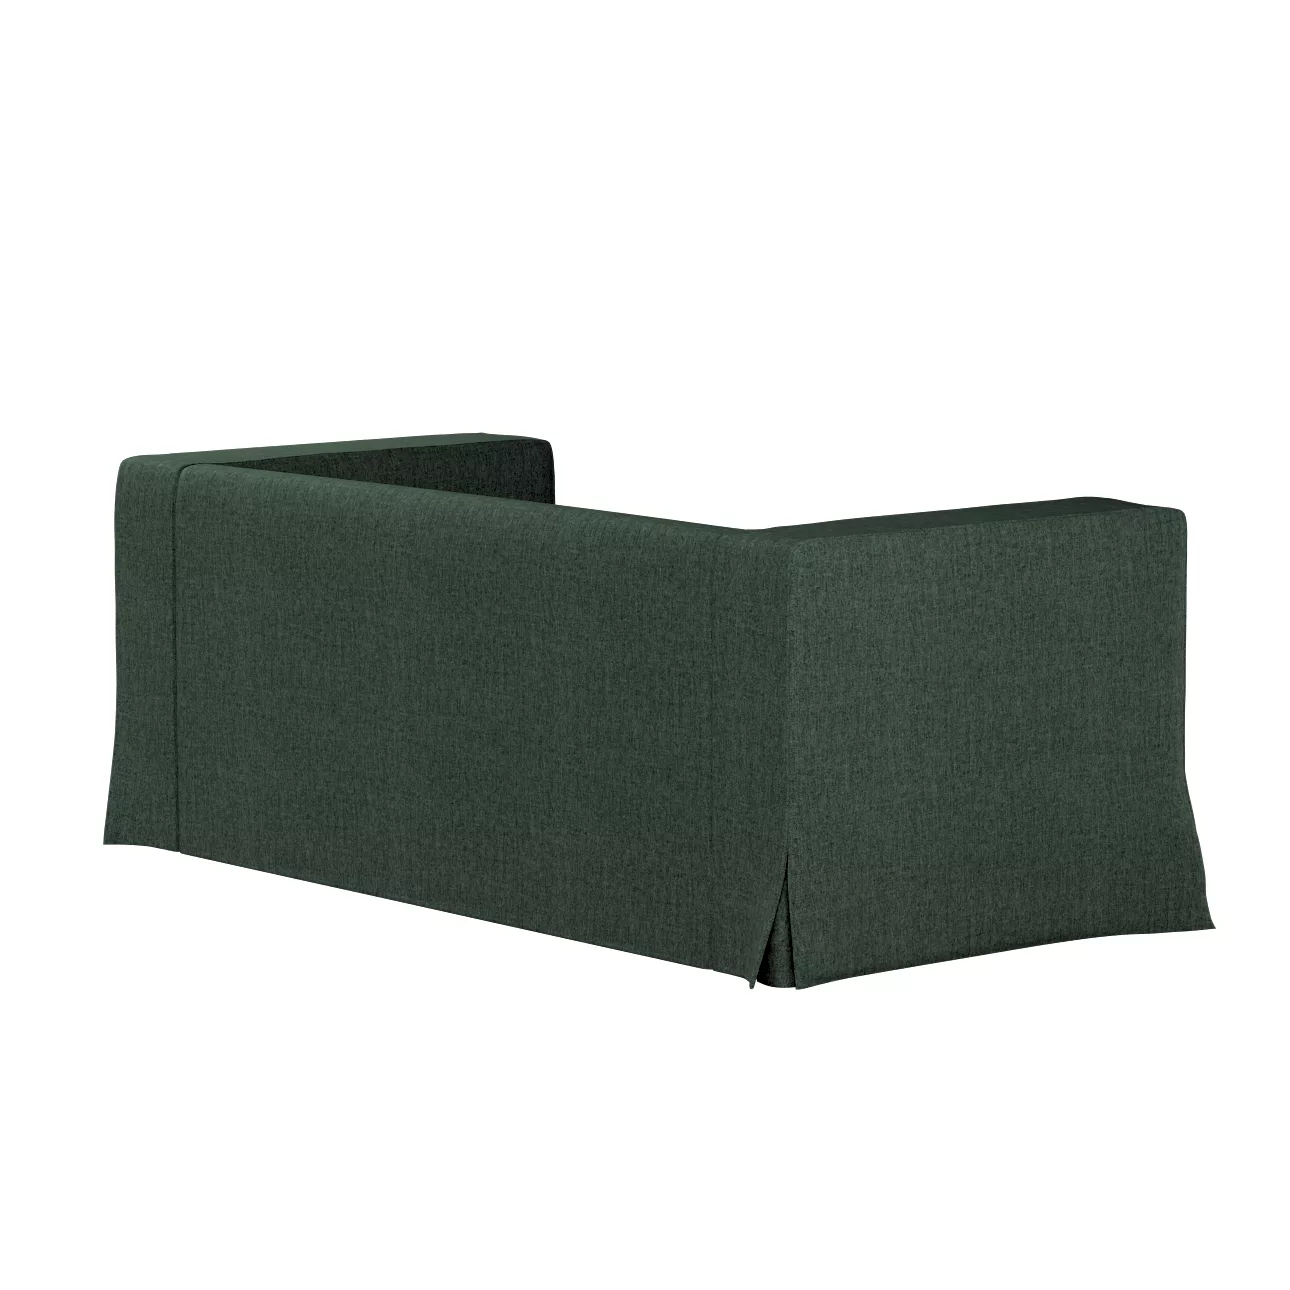 Bezug für Klippan 2-Sitzer Sofa, lang mit Kellerfalte, dunkelgrün, Klippan günstig online kaufen